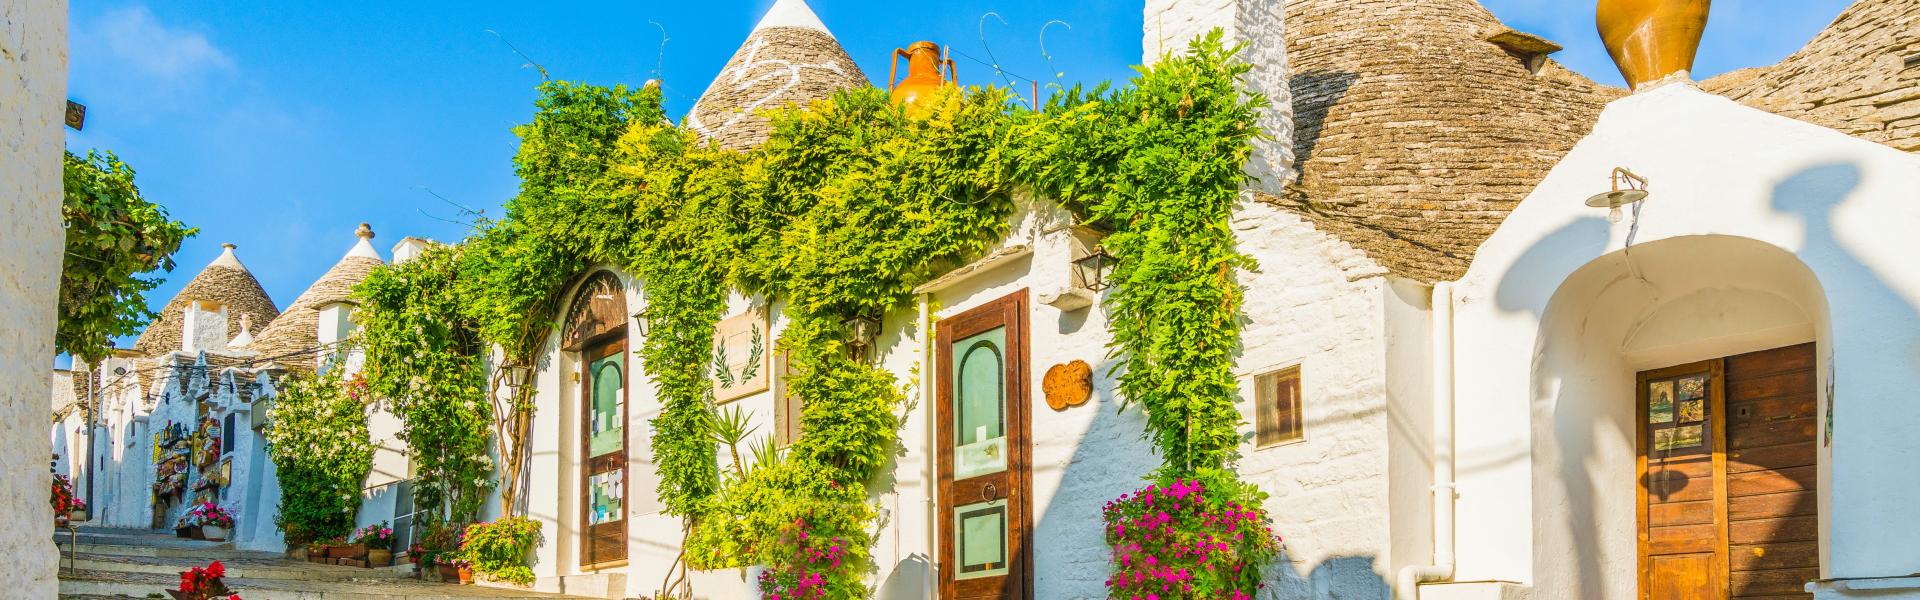 Find the perfect vacation home in Puglia - Casamundo